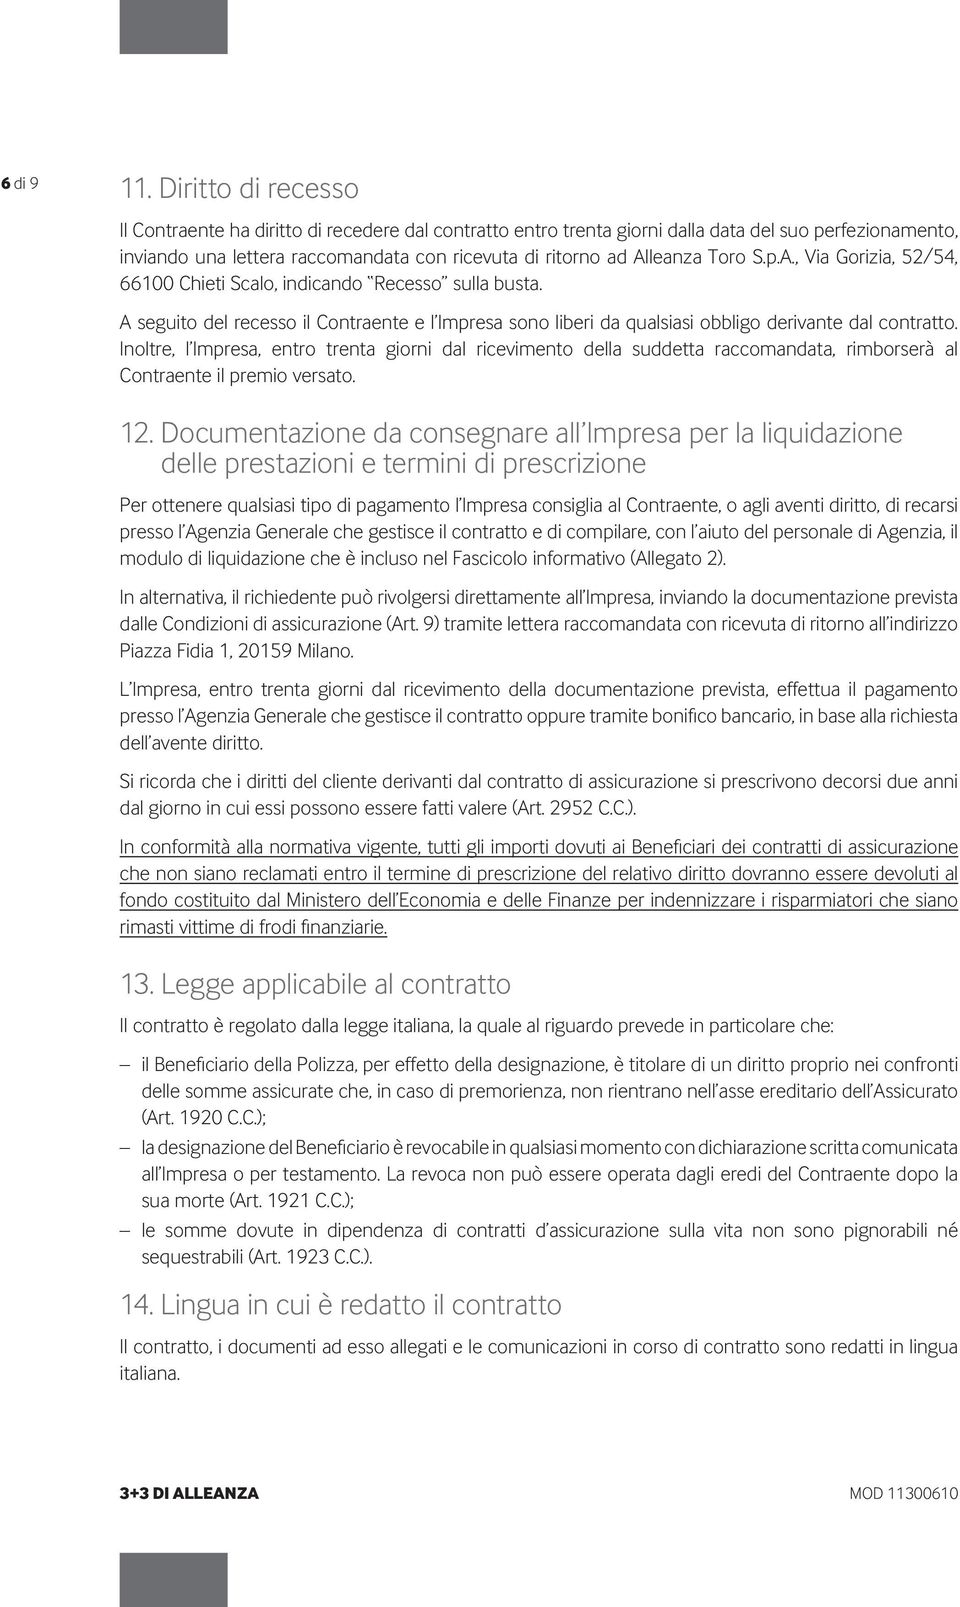 Toro S.p.A., Via Gorizia, 52/54, 66100 Chieti Scalo, indicando Recesso sulla busta. A seguito del recesso il Contraente e l Impresa sono liberi da qualsiasi obbligo derivante dal contratto.